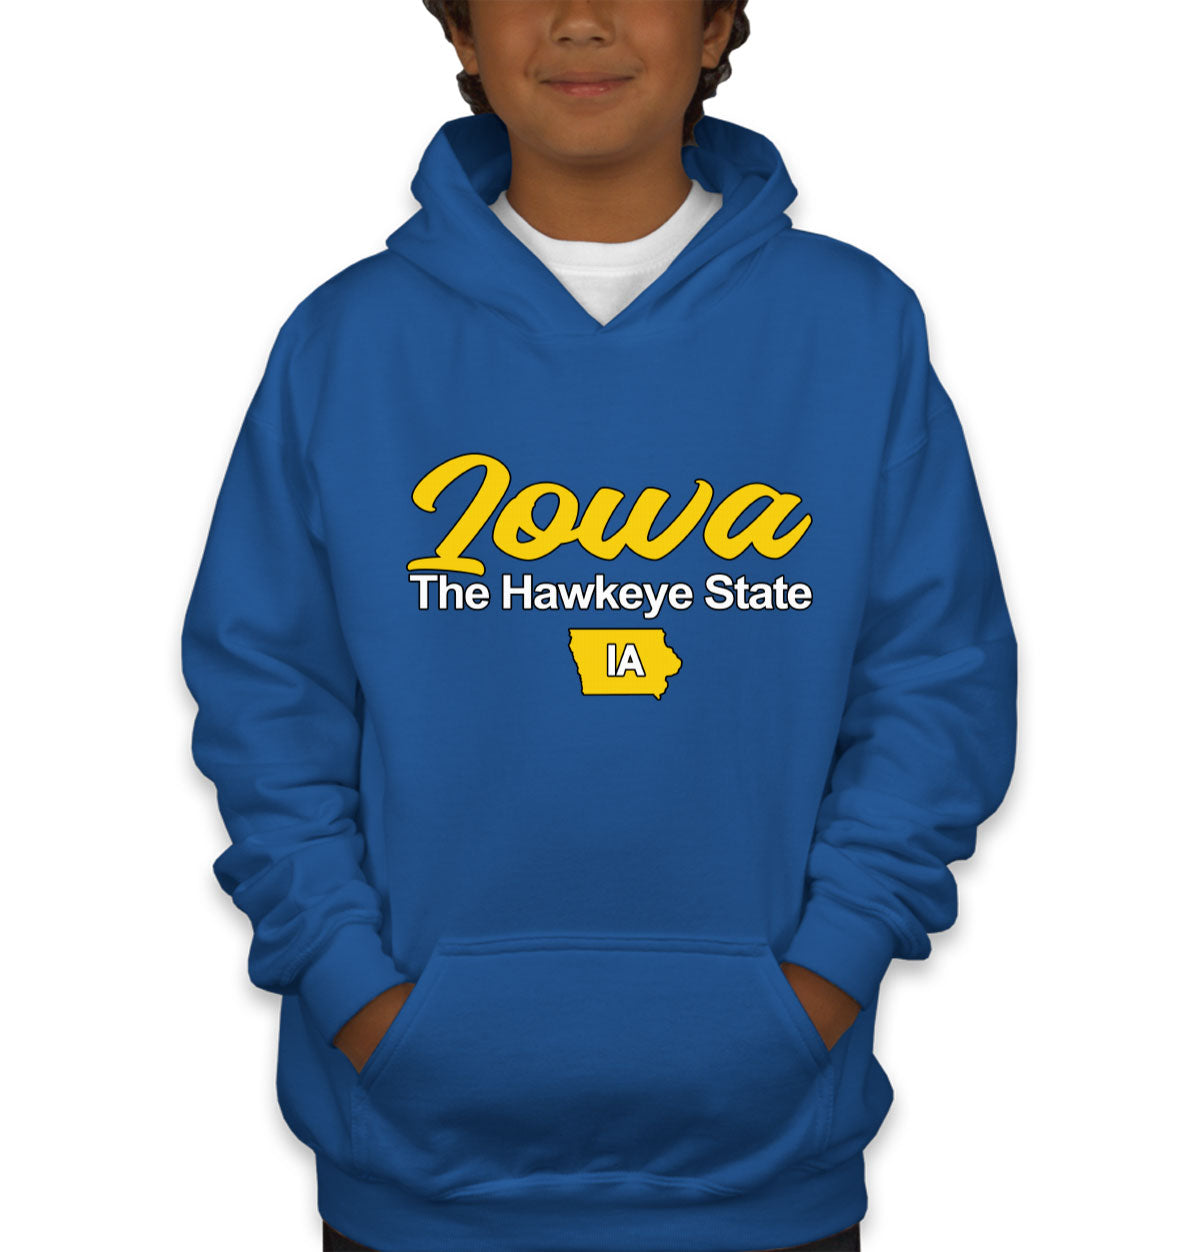 Iowa The Hawkeye State Youth Hoodie